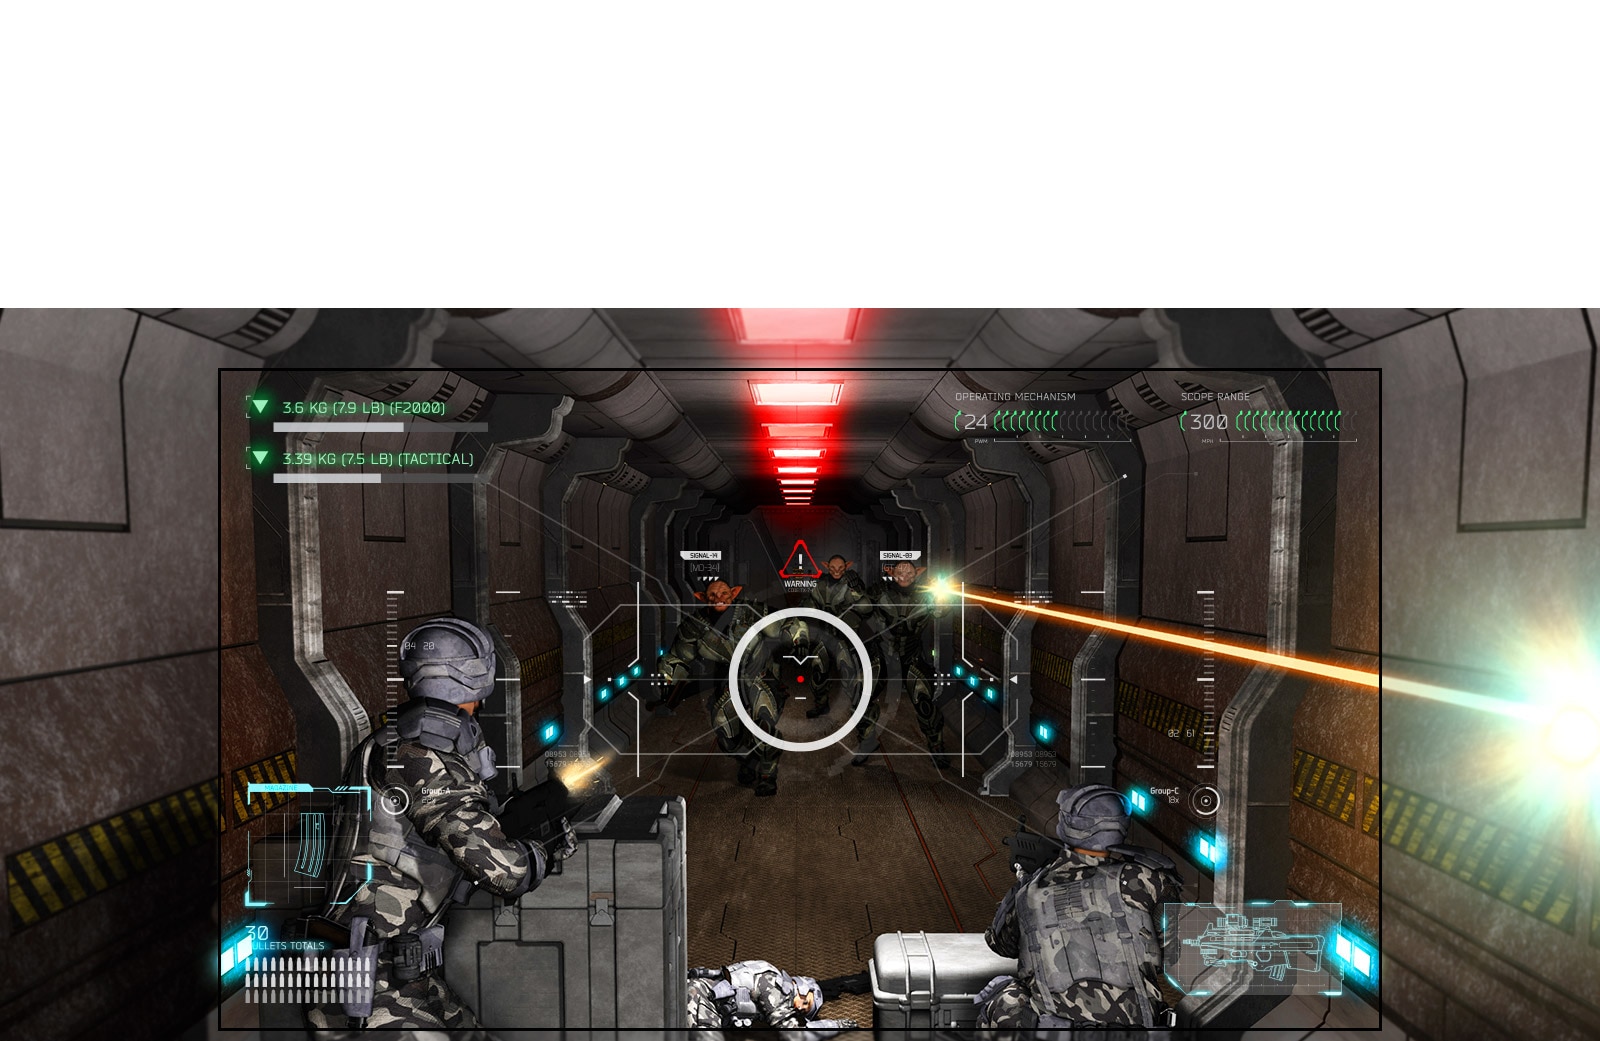 על מסך הטלוויזיה נראית סצנה ממשחק יריות. השחקן נמצא בעמדת נחיתות מול חייזרים עם רובים.